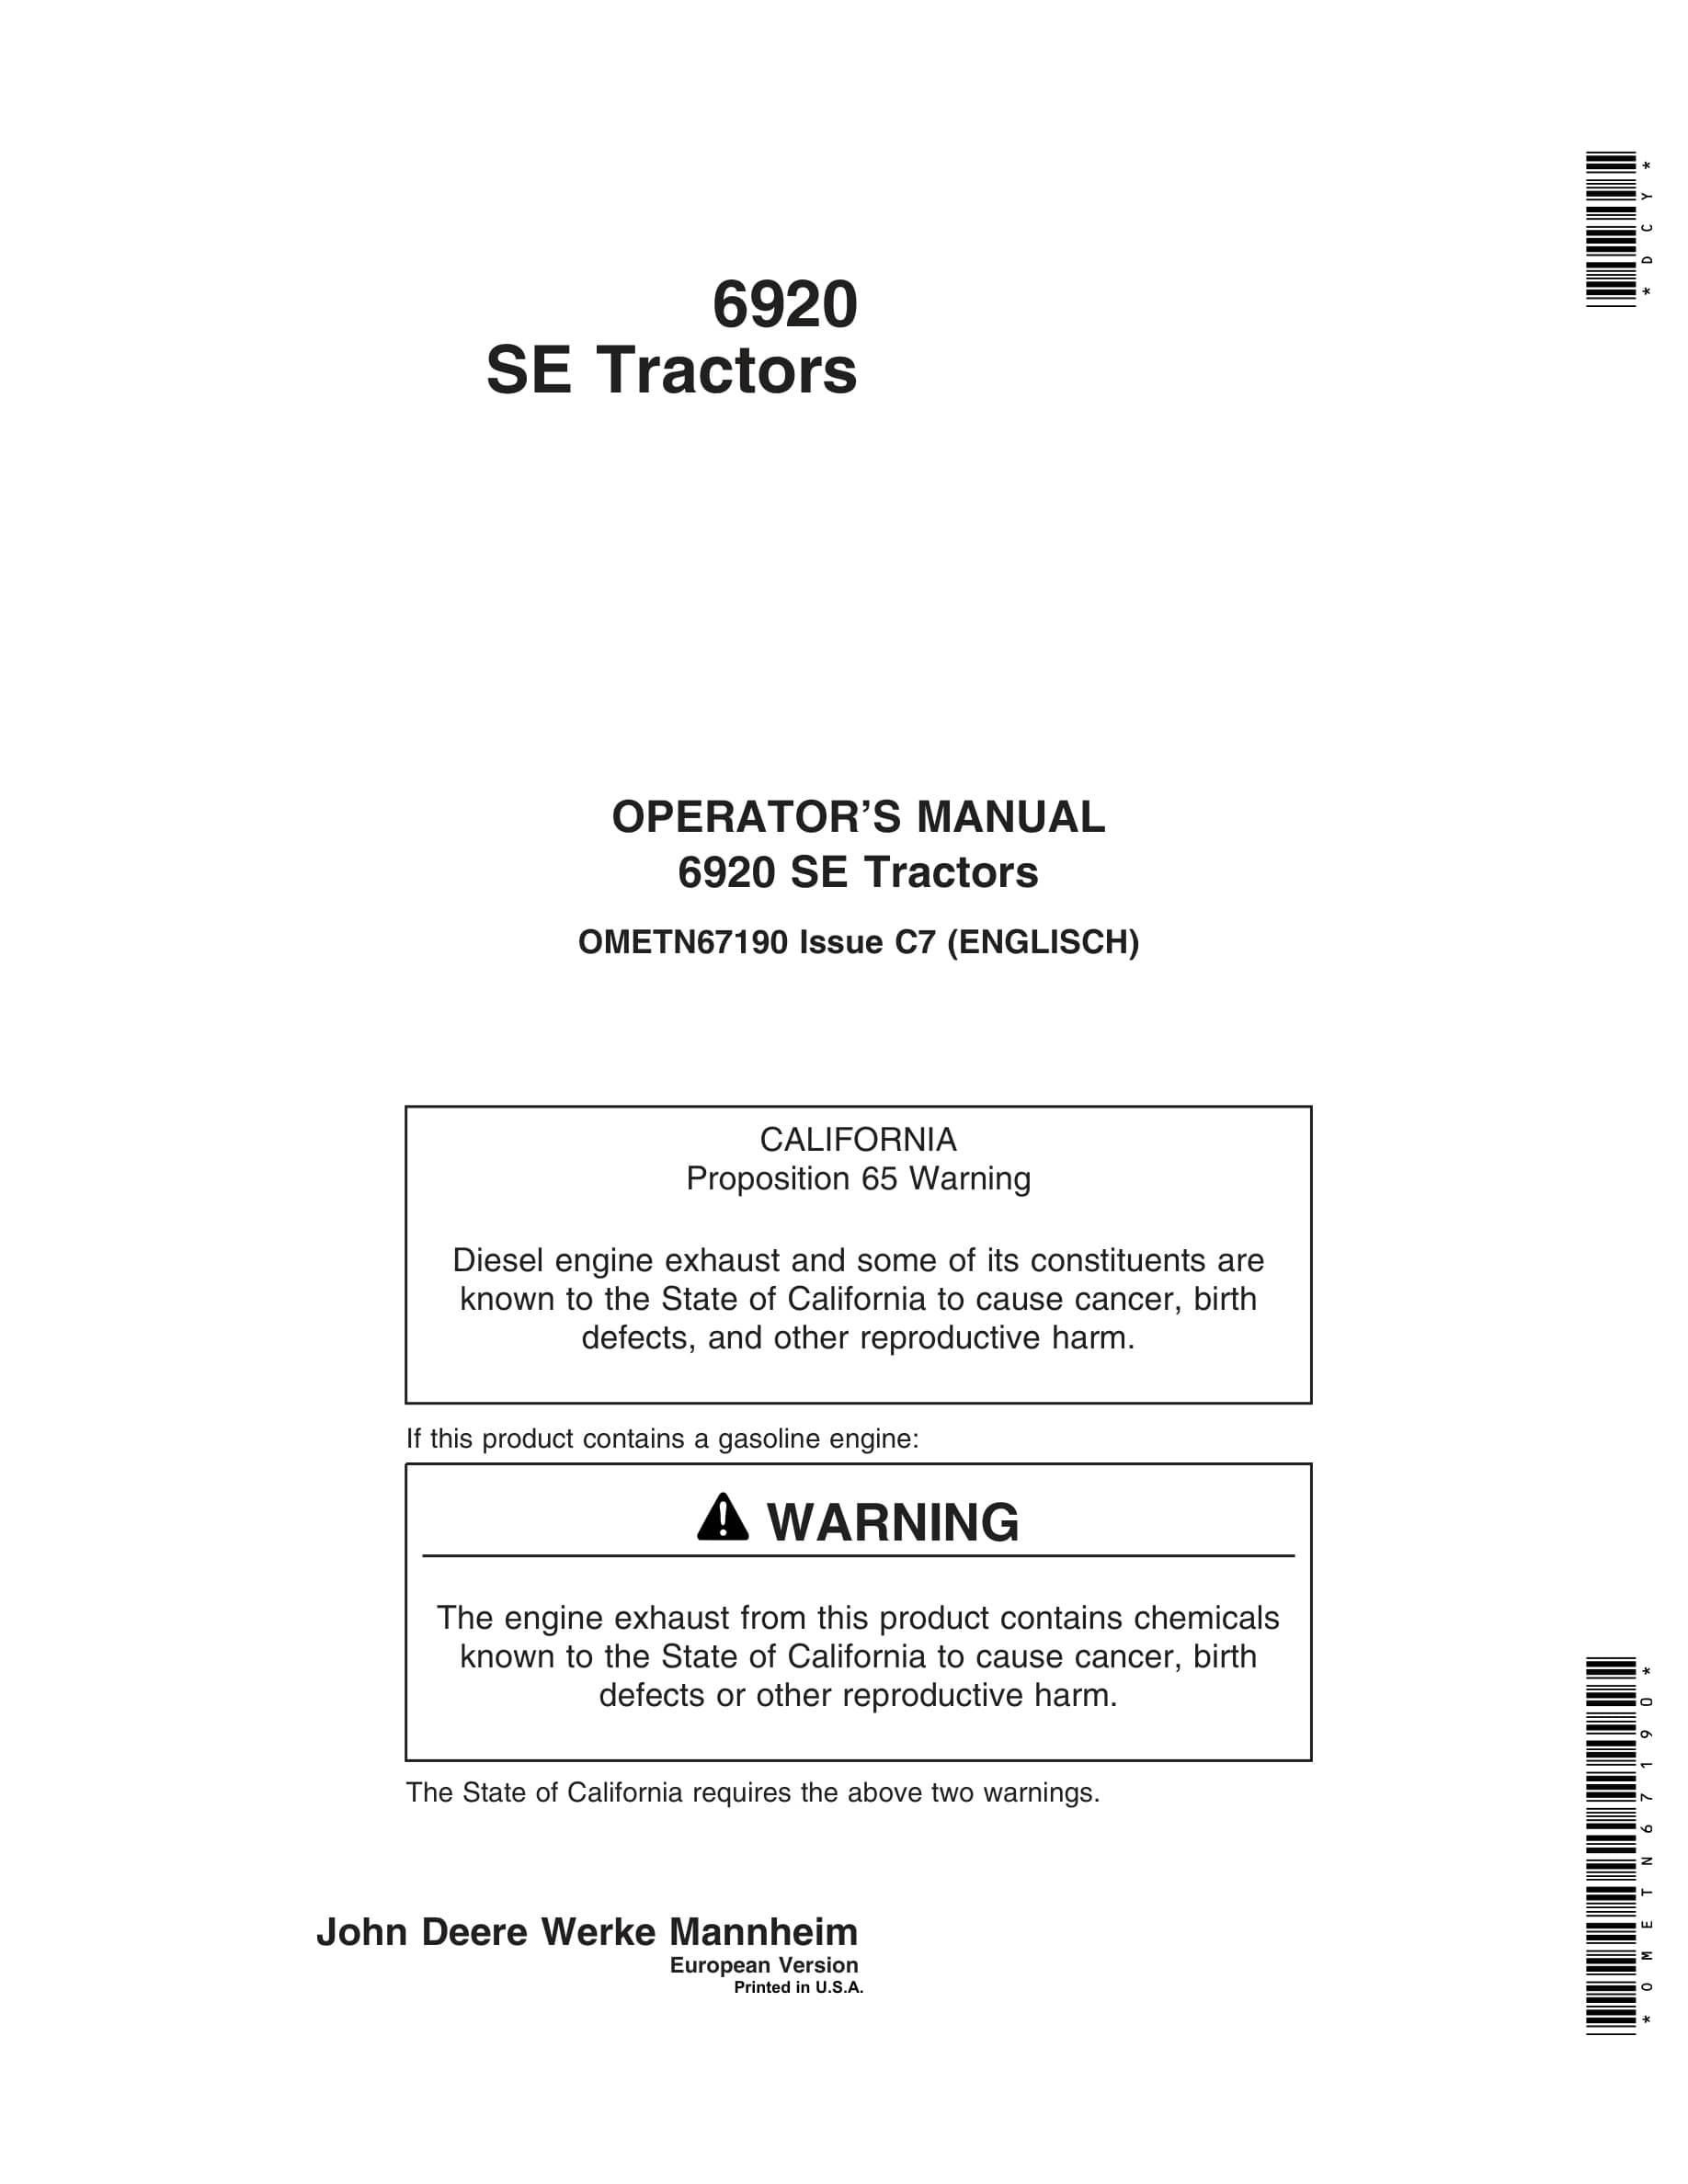 John Deere 6920 Se Tractors Operator Manuals OMETN67190-1